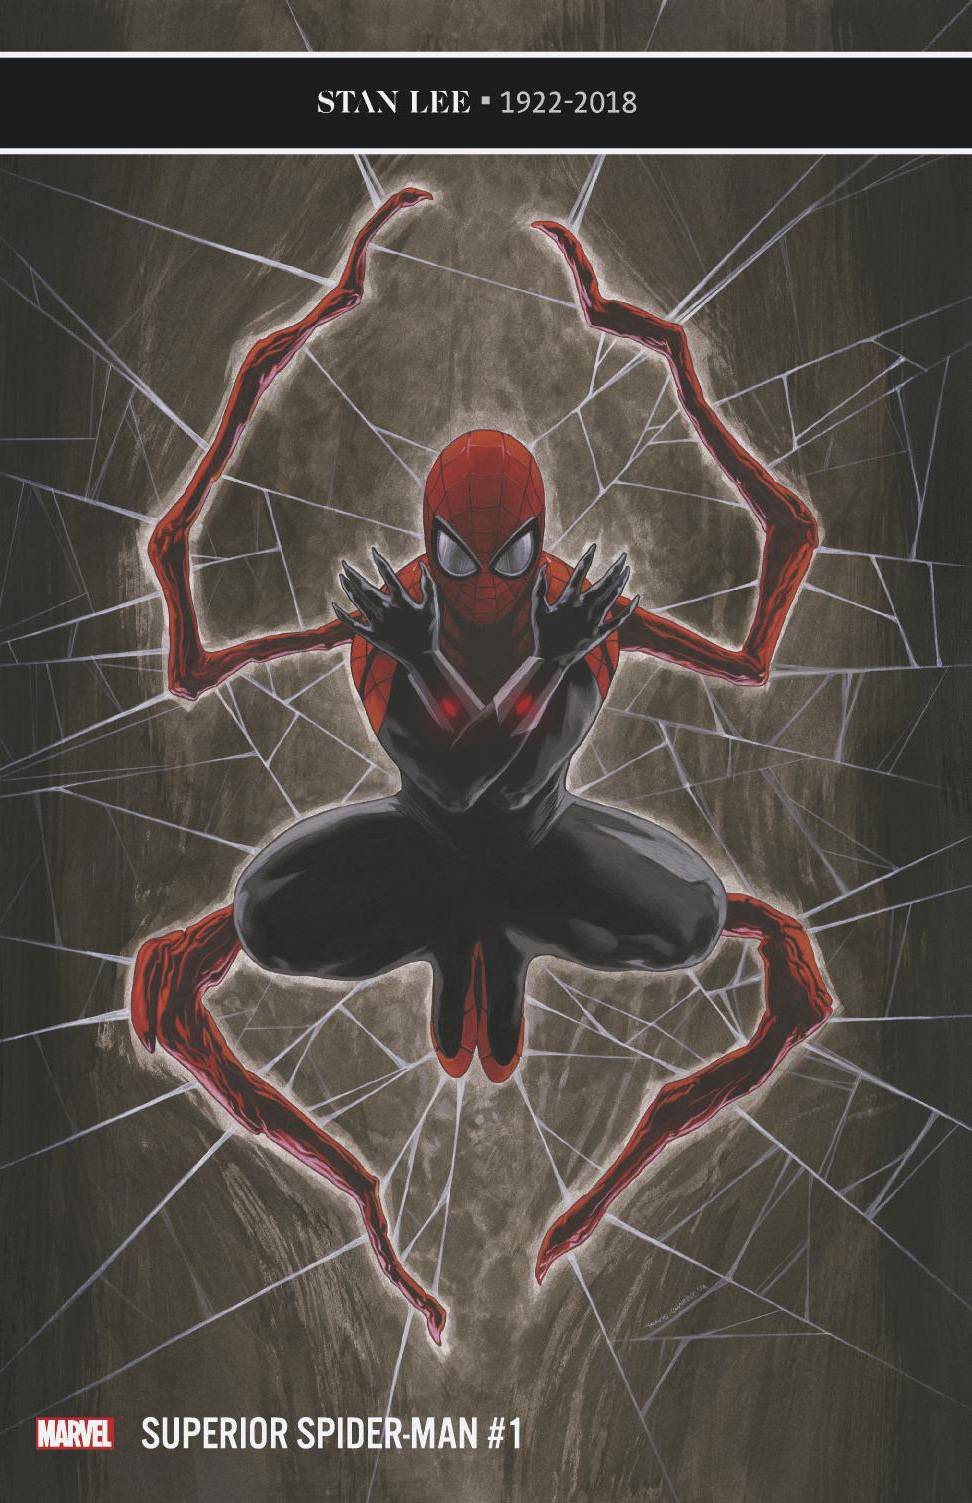 SUPERIOR SPIDER-MAN #1 12/19